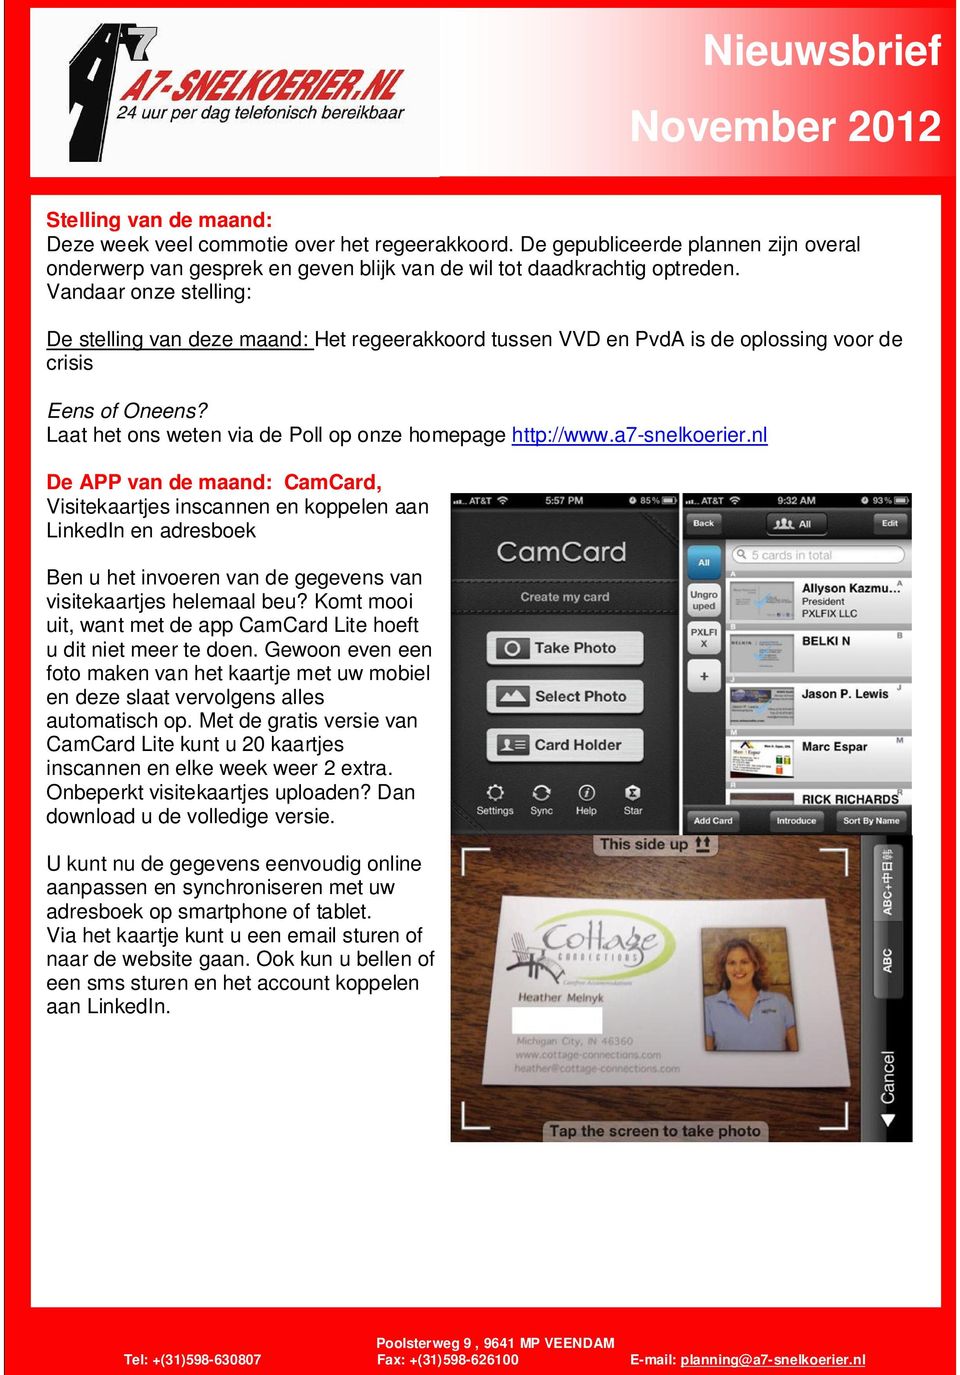 a7-snelkoerier.nl De APP an de maand: CamCard, Visitekaartjes inscannen en koppelen aan LinkedIn en adresboek Ben u het inoeren an de gegeens an isitekaartjes helemaal beu?